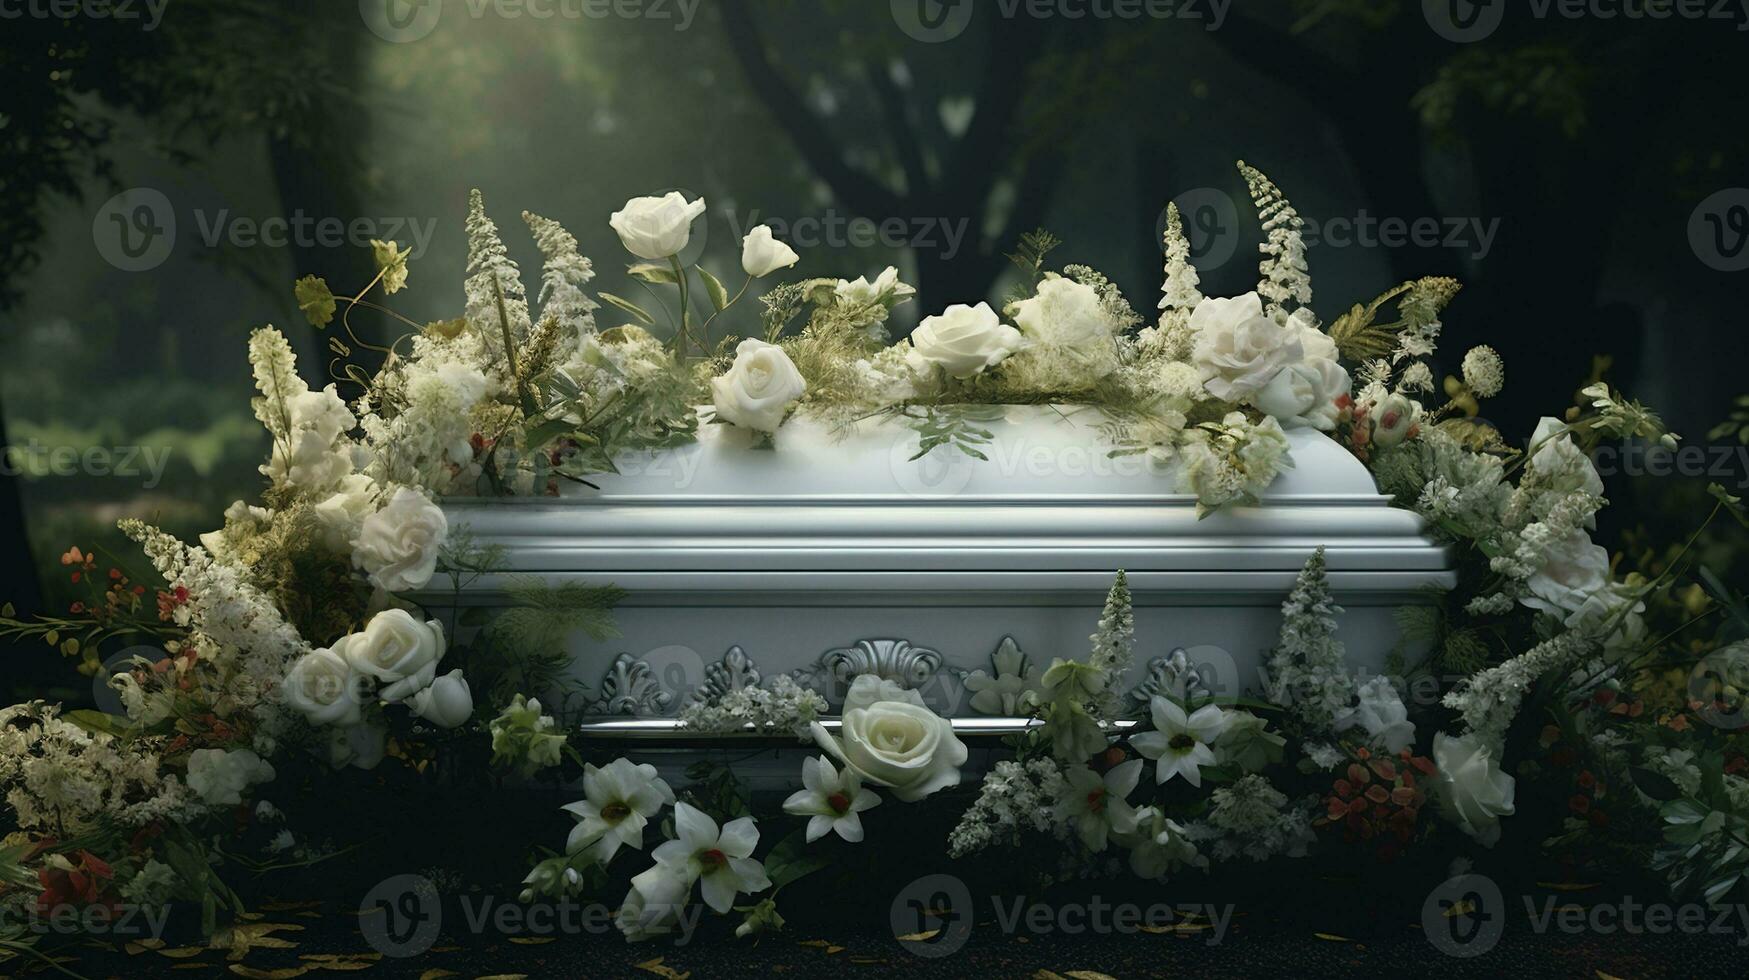 génératif ai, fleurs sur une cercueil dans le funéraire ou enterrement prestations de service à cimetière, cercueil avec fleurs photo